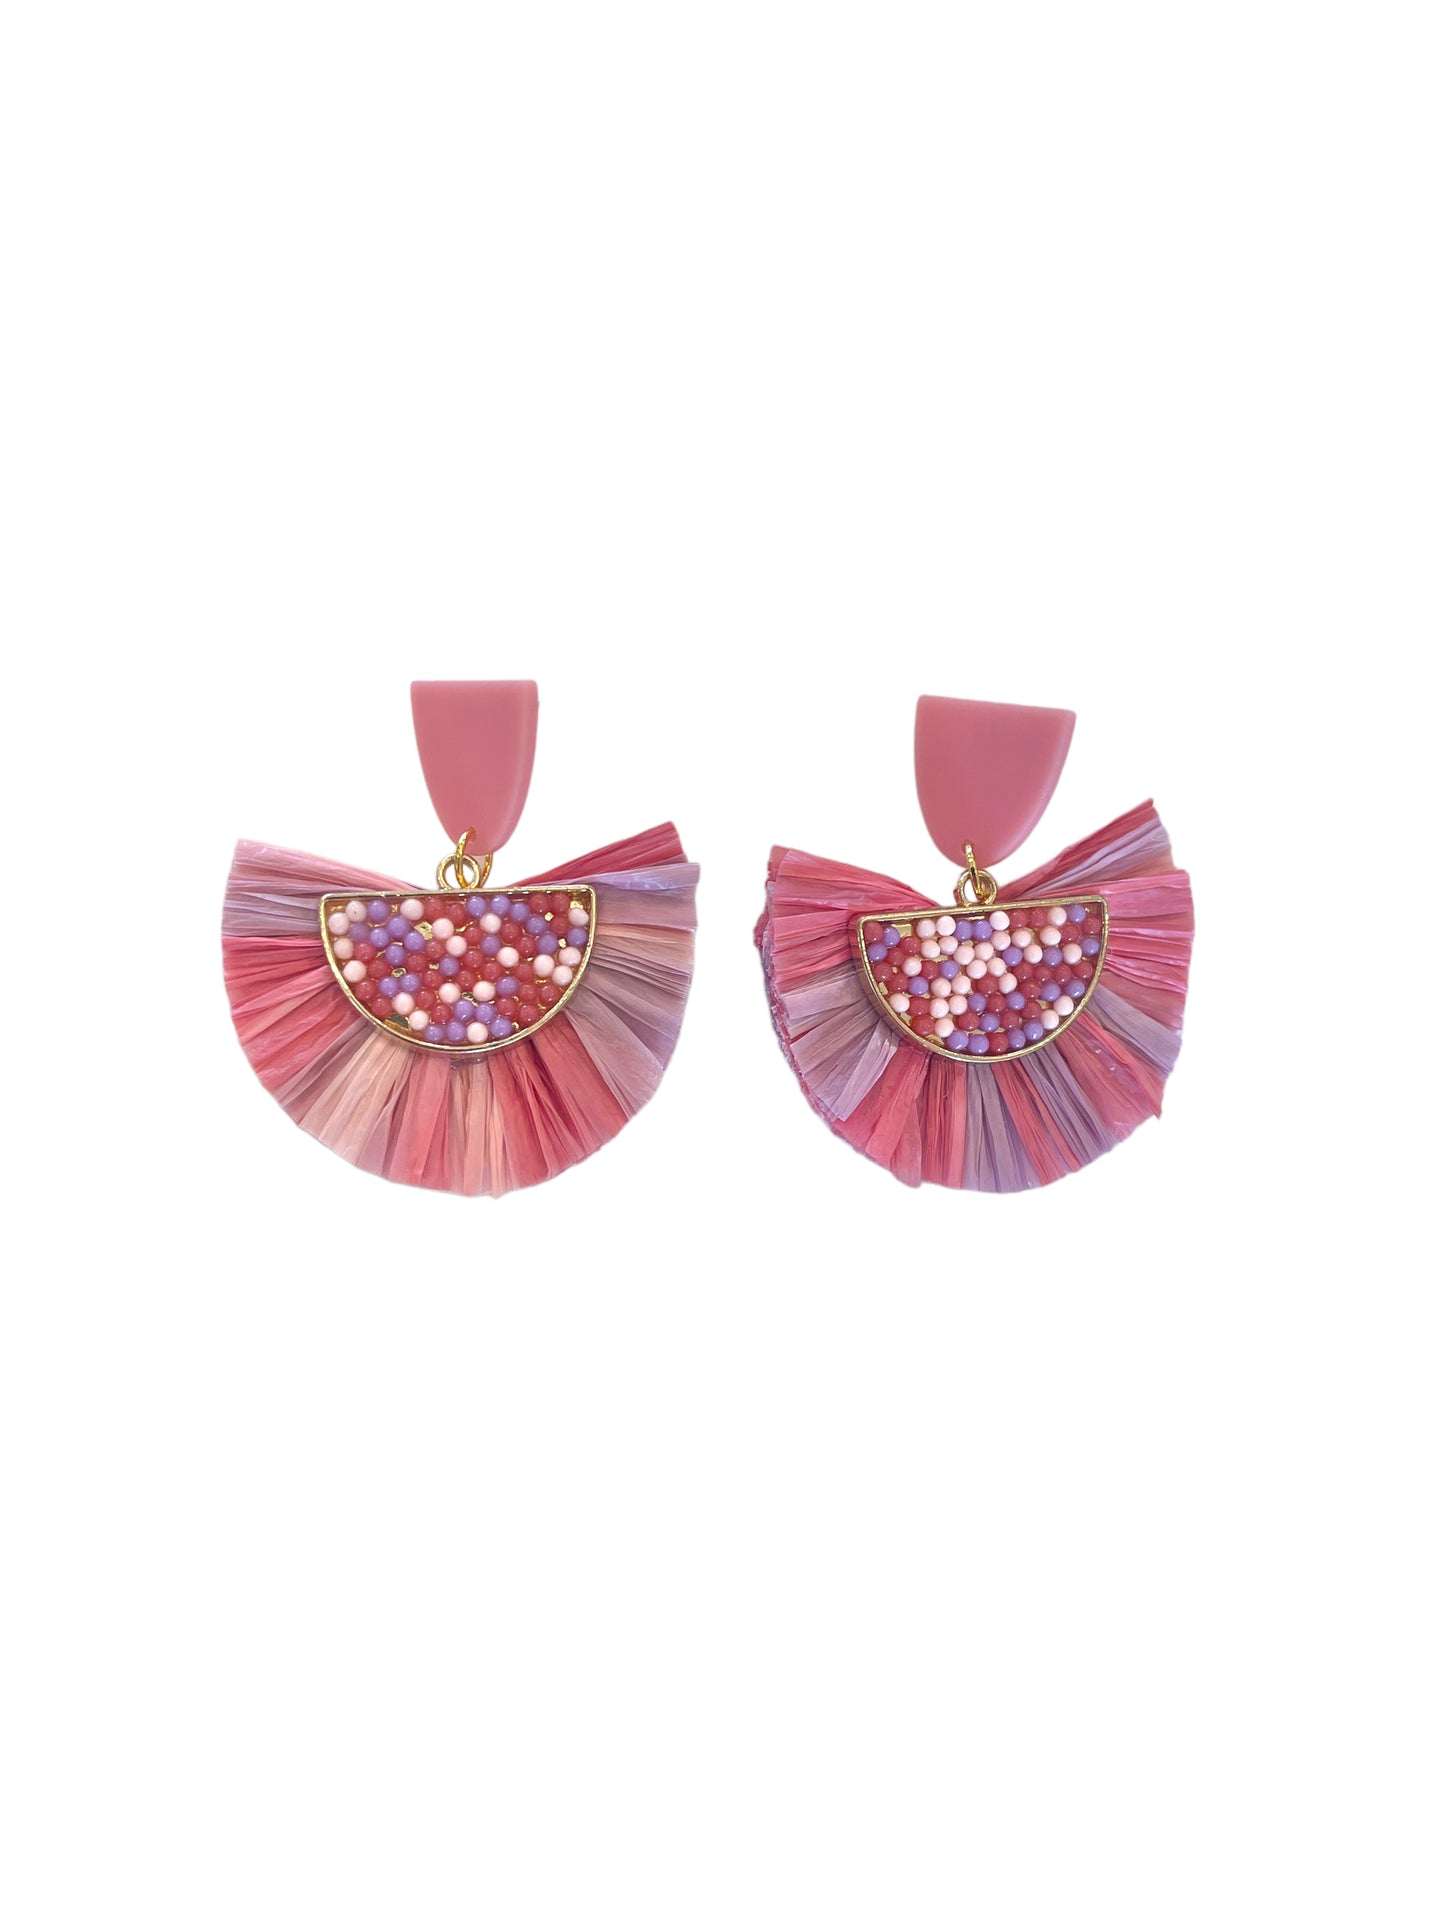 Multicolor Tassel Fan Earrings - Pink Post